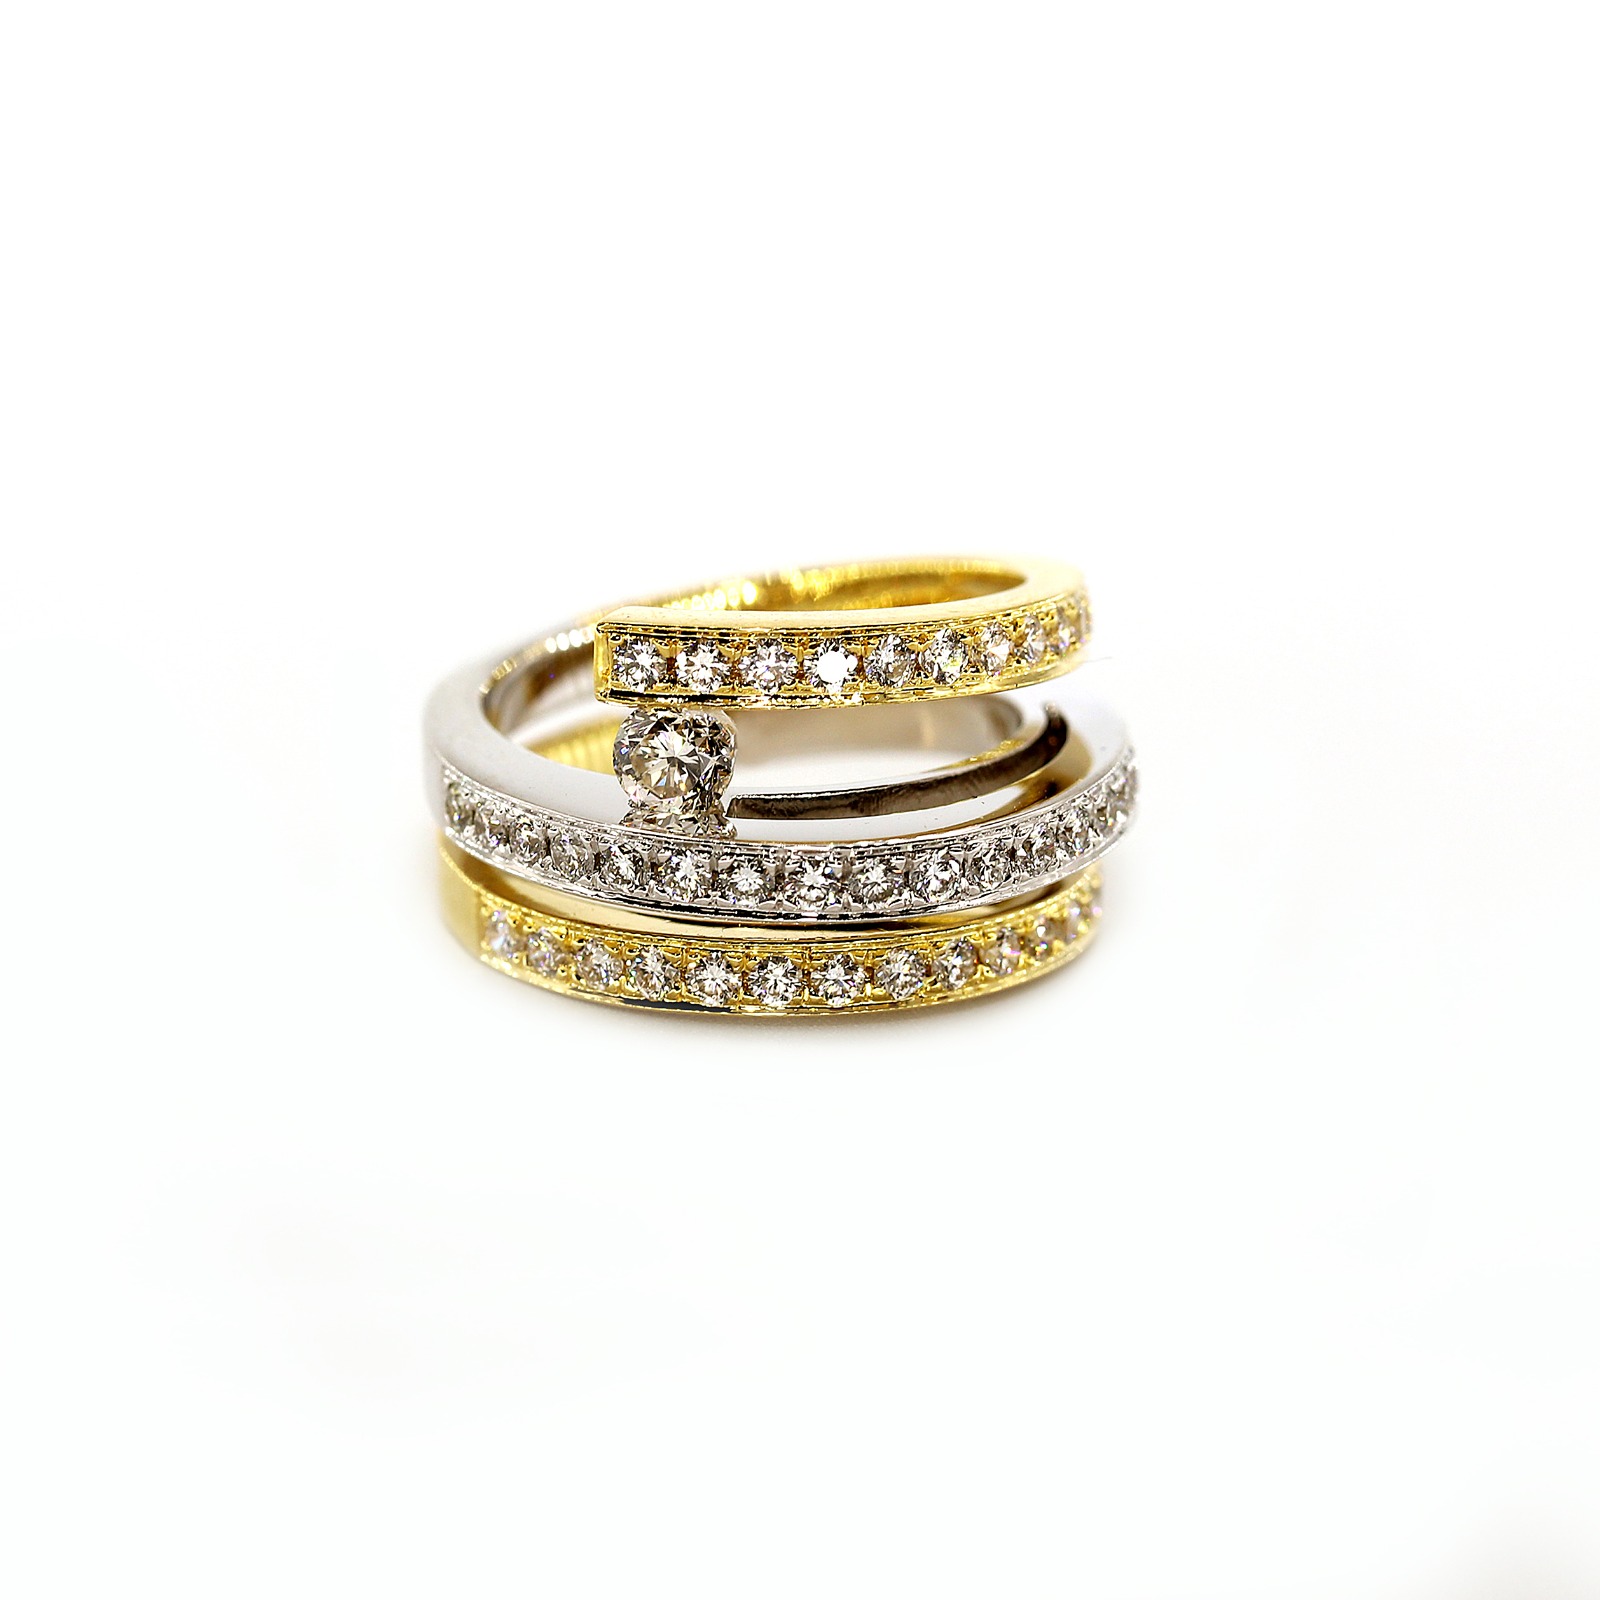 Bague pour femme spécialement conçue en or blanc 18 carats et diamants - Offre quotidienne par GoldenEyeJewellery.net